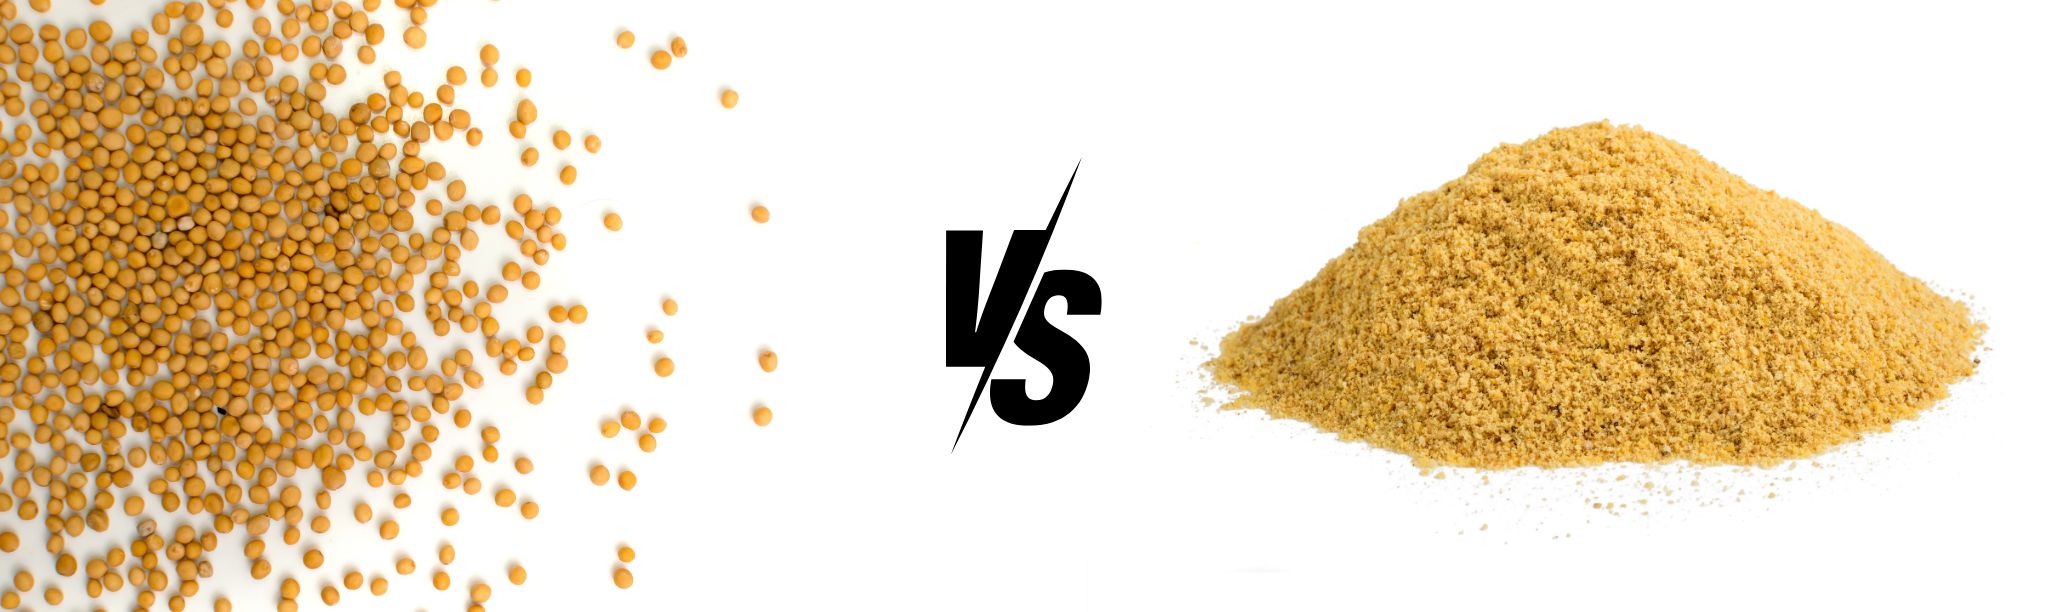 Mustard Seed vs. Mustard Powder